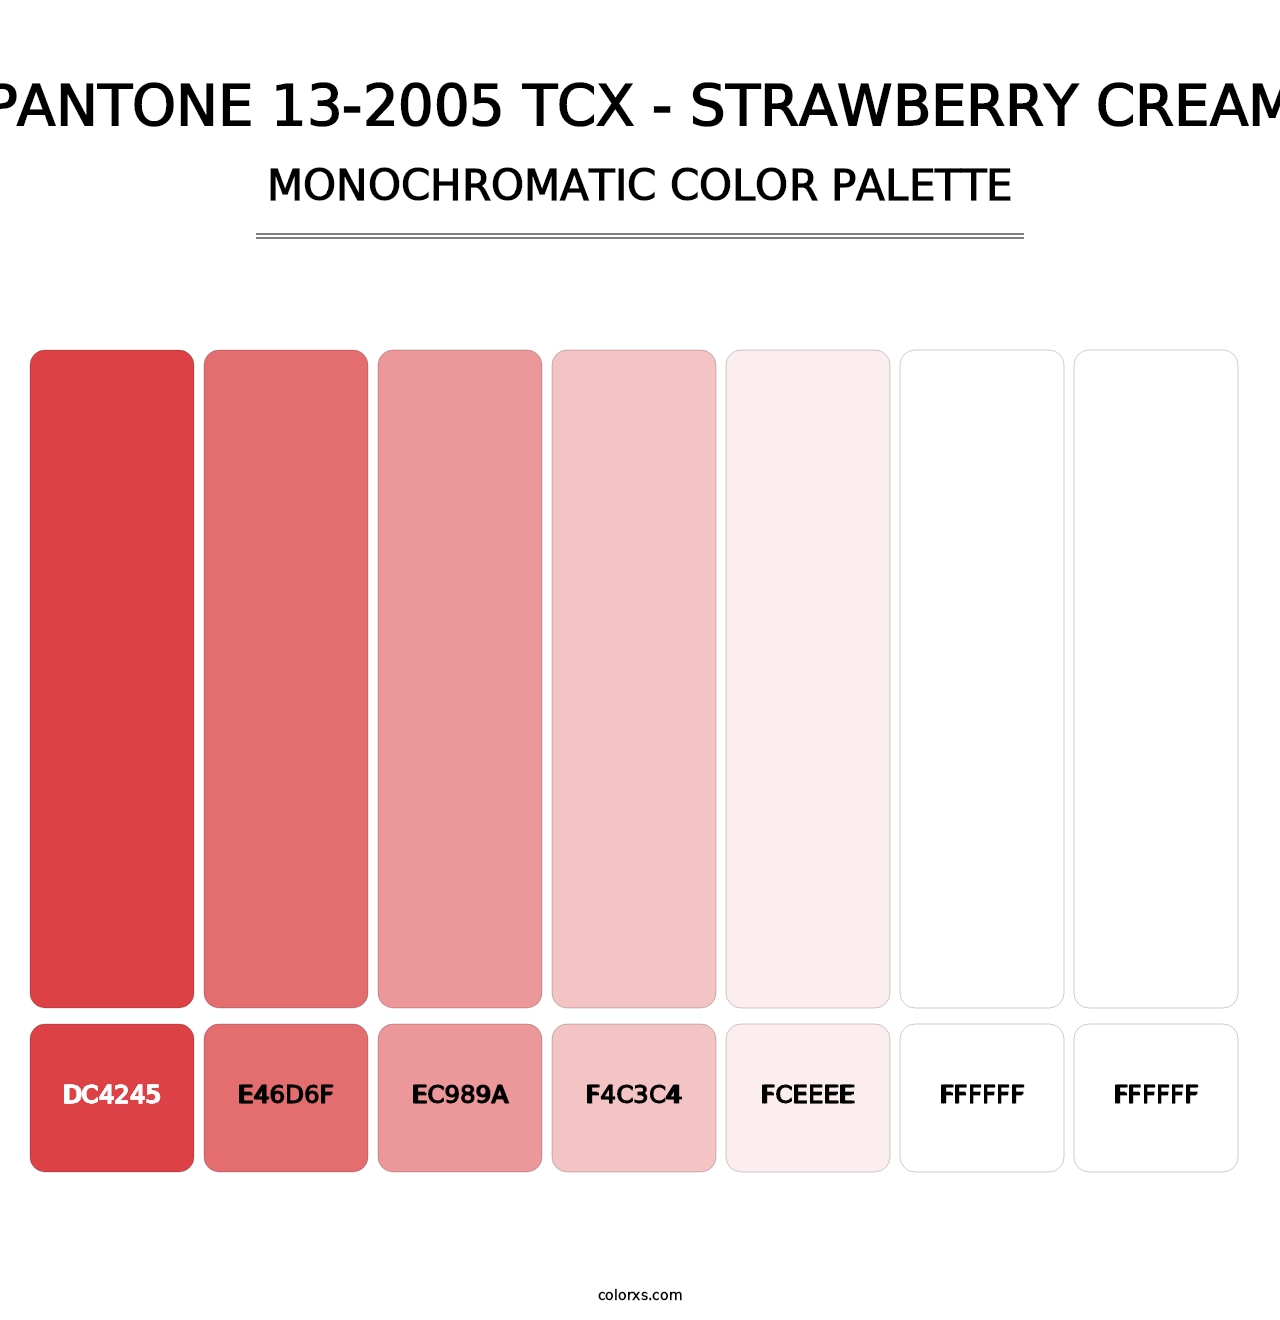 PANTONE 13-2005 TCX - Strawberry Cream - Monochromatic Color Palette